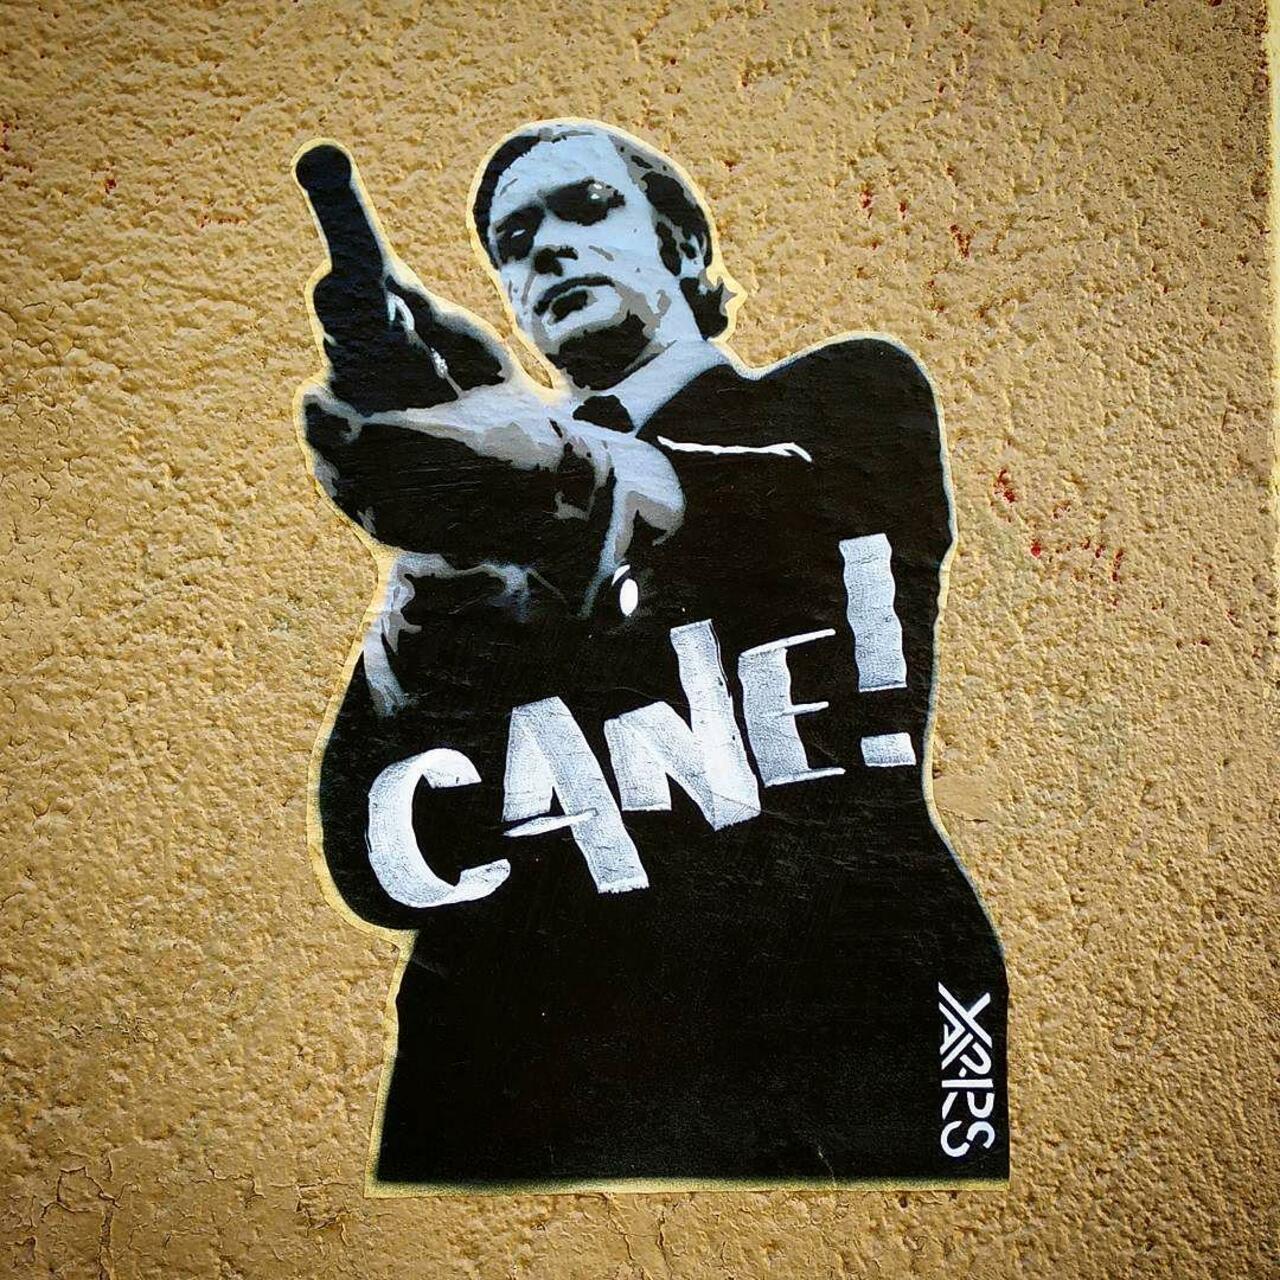 #Paris #graffiti photo by @ceky_art http://ift.tt/1LgPedU #StreetArt http://t.co/qpR0yOFSA2